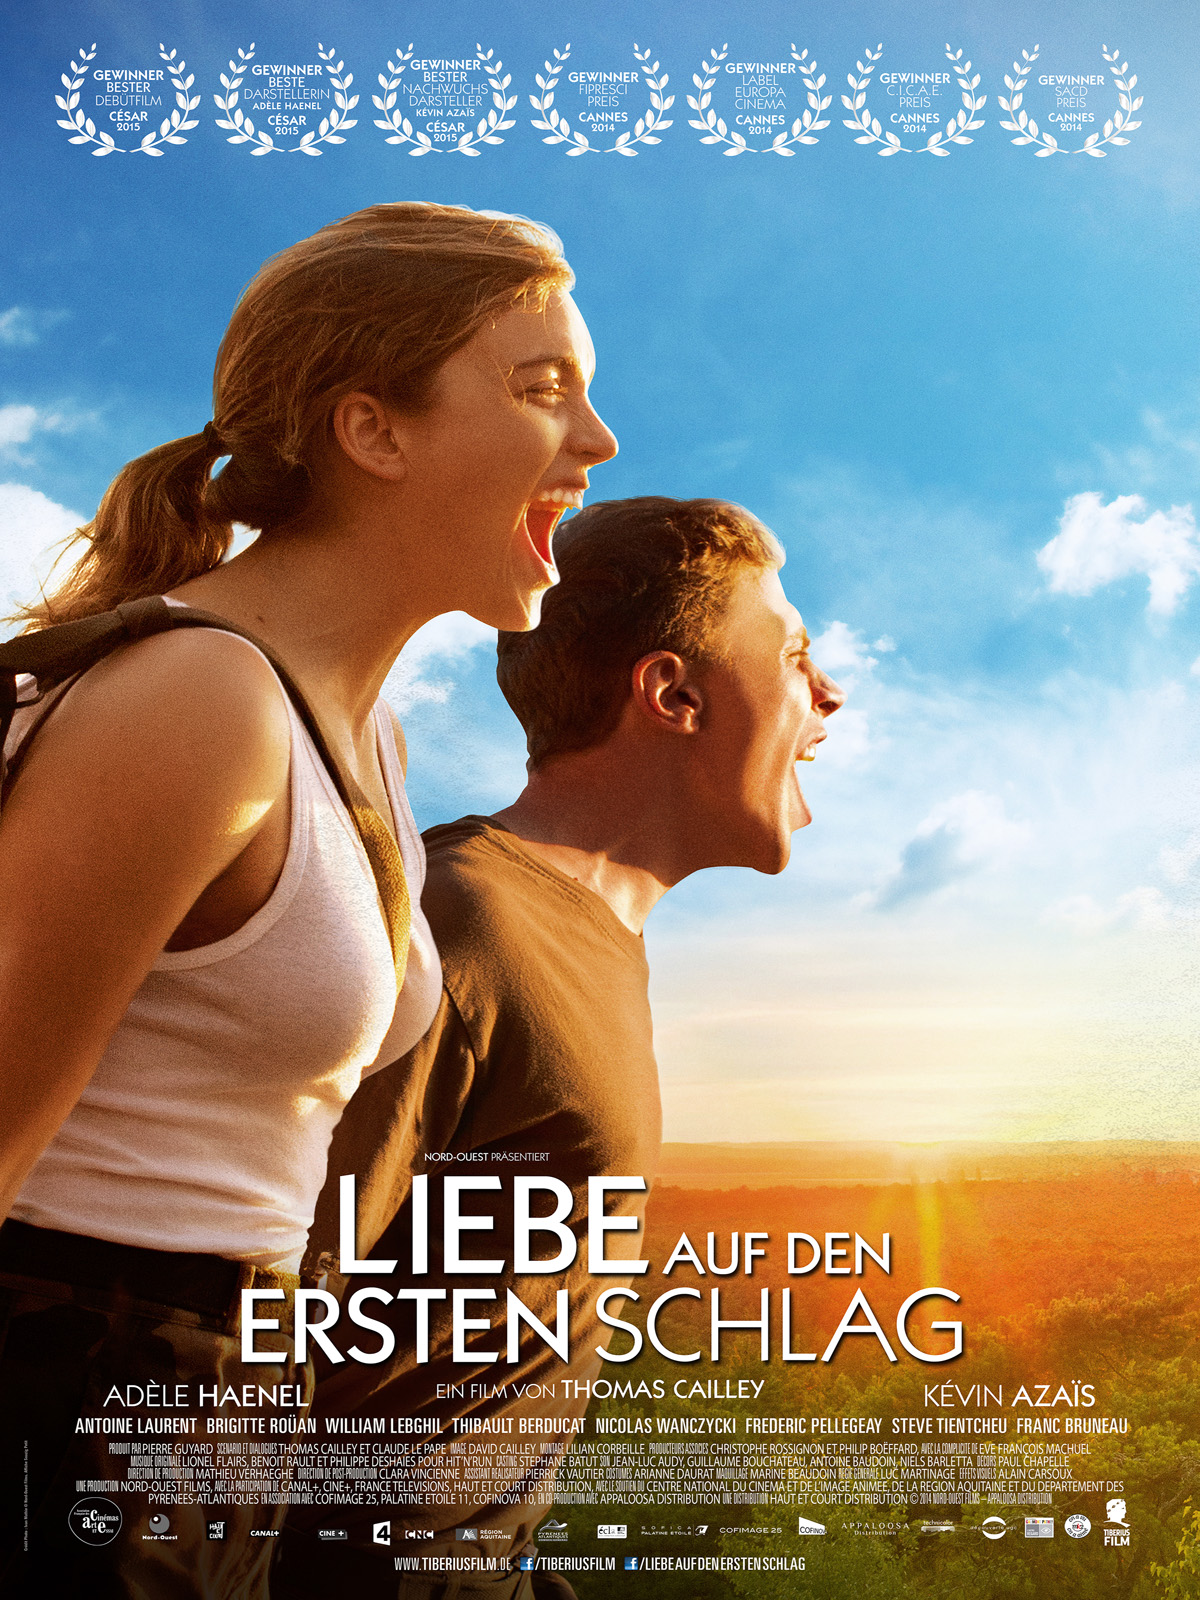 Liebe auf den ersten Schlag - Film 2014 - FILMSTARTS.de